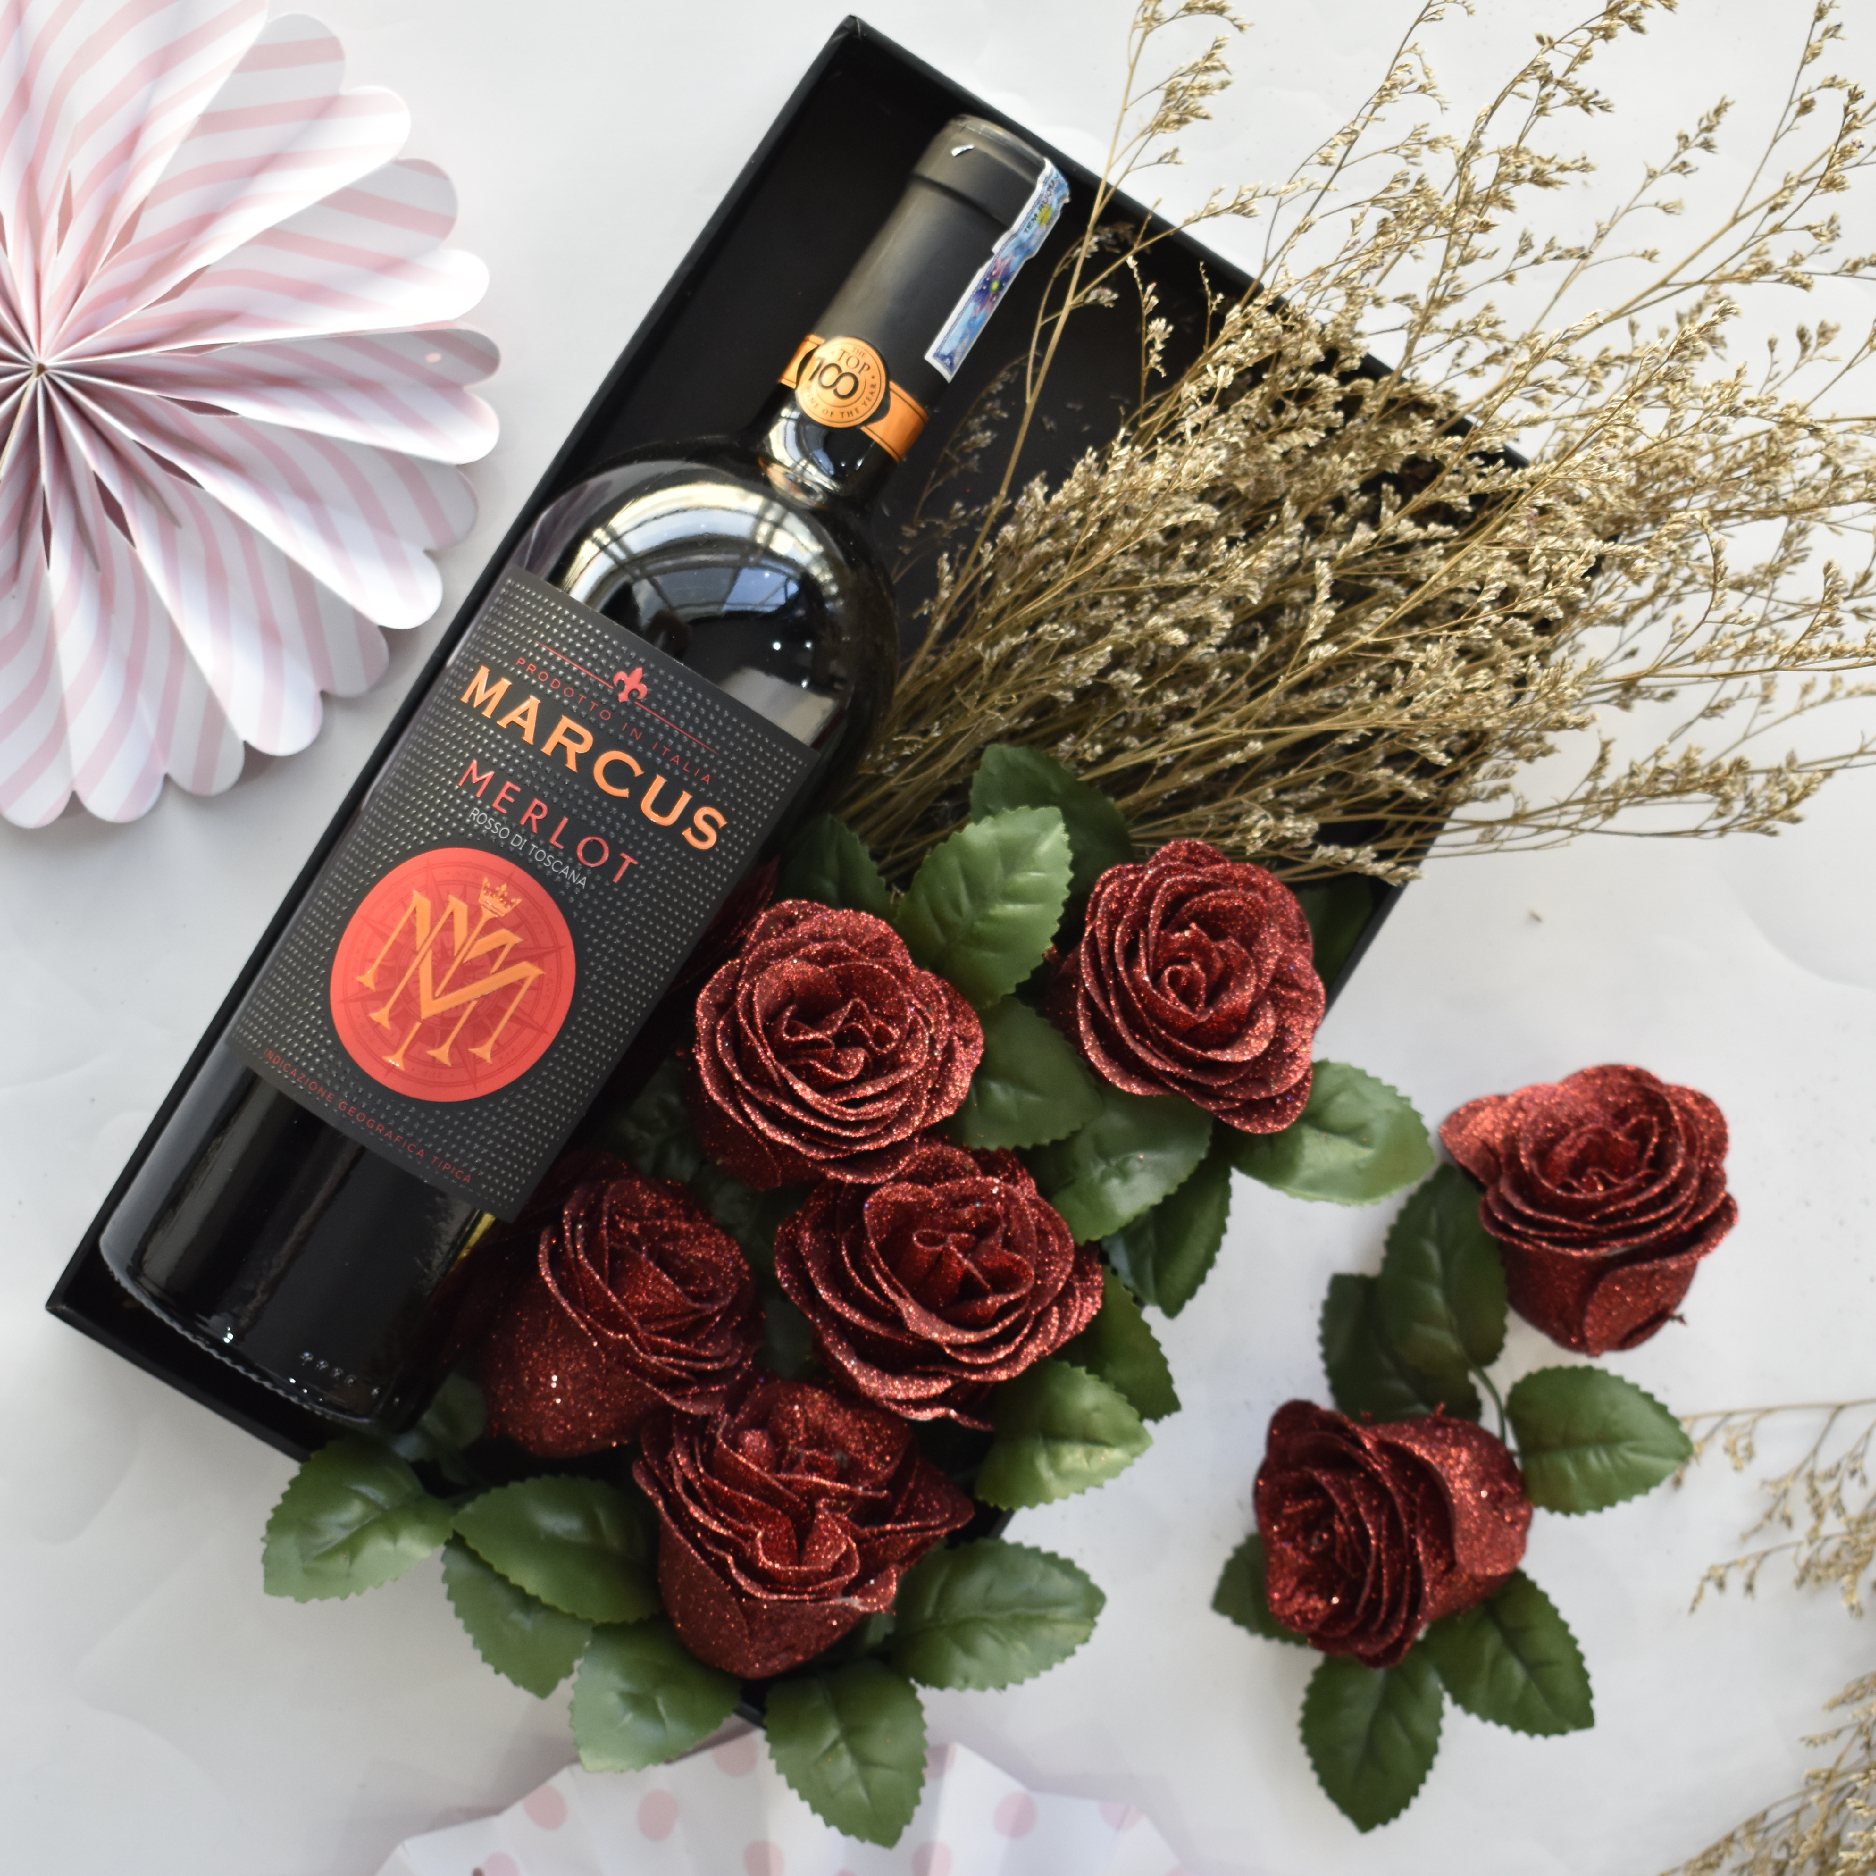 Cùng tìm hiểu về TM WINE VIỆT NAM để khám phá những loại rượu vang ngon tuyệt của Việt Nam. Quà tặng cho bạn bè, đối tác hoặc để thưởng thức trong các dịp đặc biệt, đều là sự lựa chọn hoàn hảo.